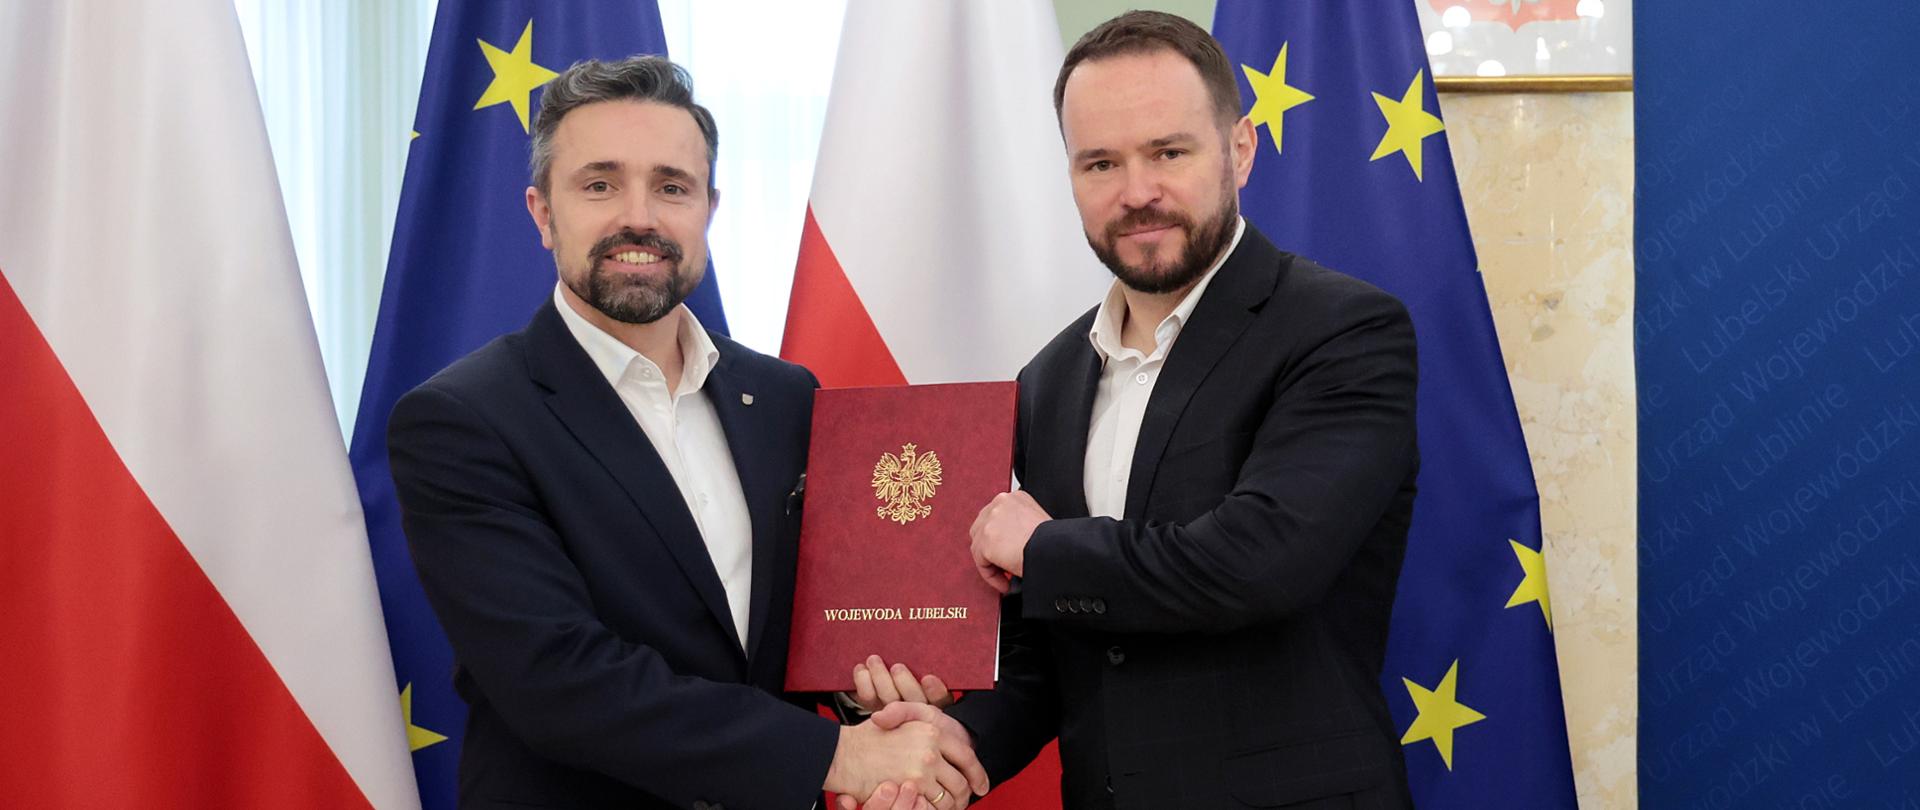 Podpisanie umowy w sprawie nowego żłobka w Białej Podlaskiej w ramach rządowego programu „Maluch +”